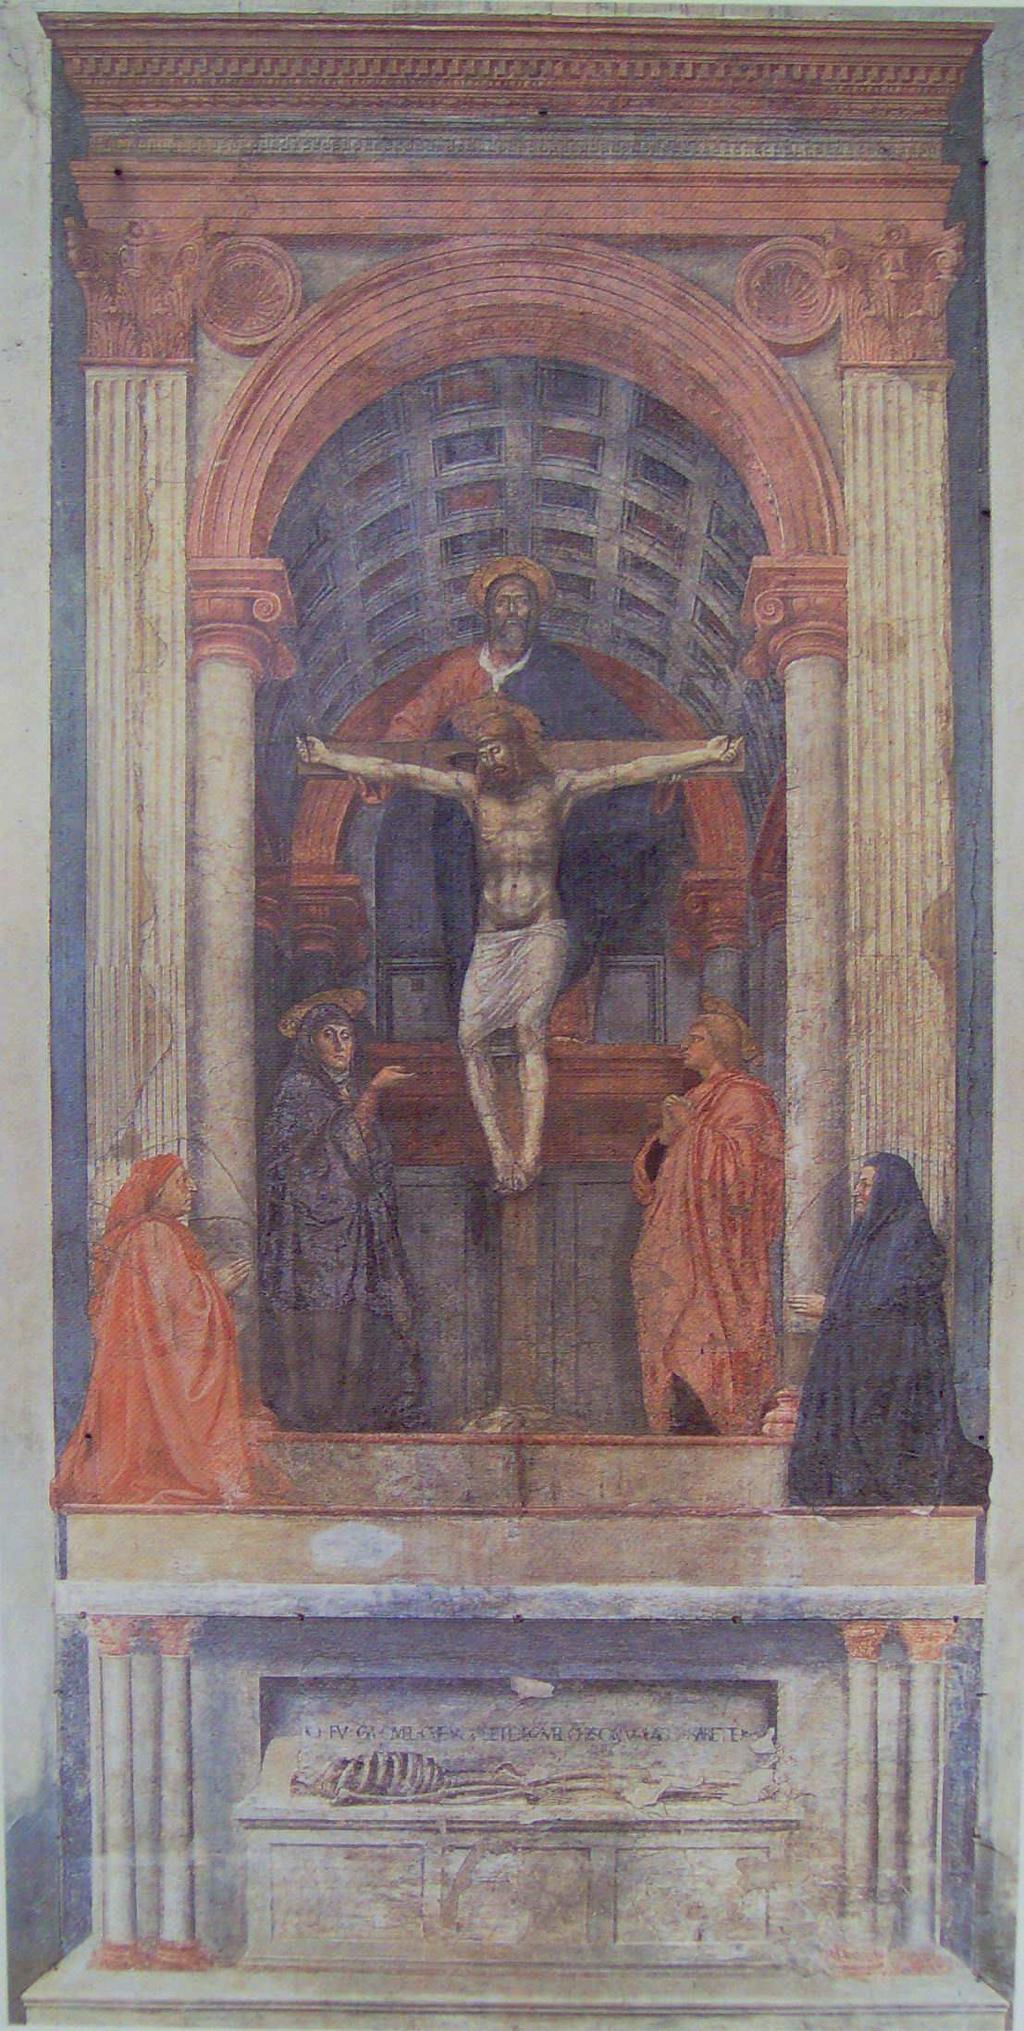 Τίτλος: Η Αγία Τριάδα µε την Παναγία, τον Άγιο Ιωάννη και τους δωρητές, εκκλησία της Σάντα Μαρία-Νοβέλλα, Φλωρεντία. Καλλιτέχνης: Μαζάτσιο Χρονολογία: 1425. Υλικό: Νωπογραφία.